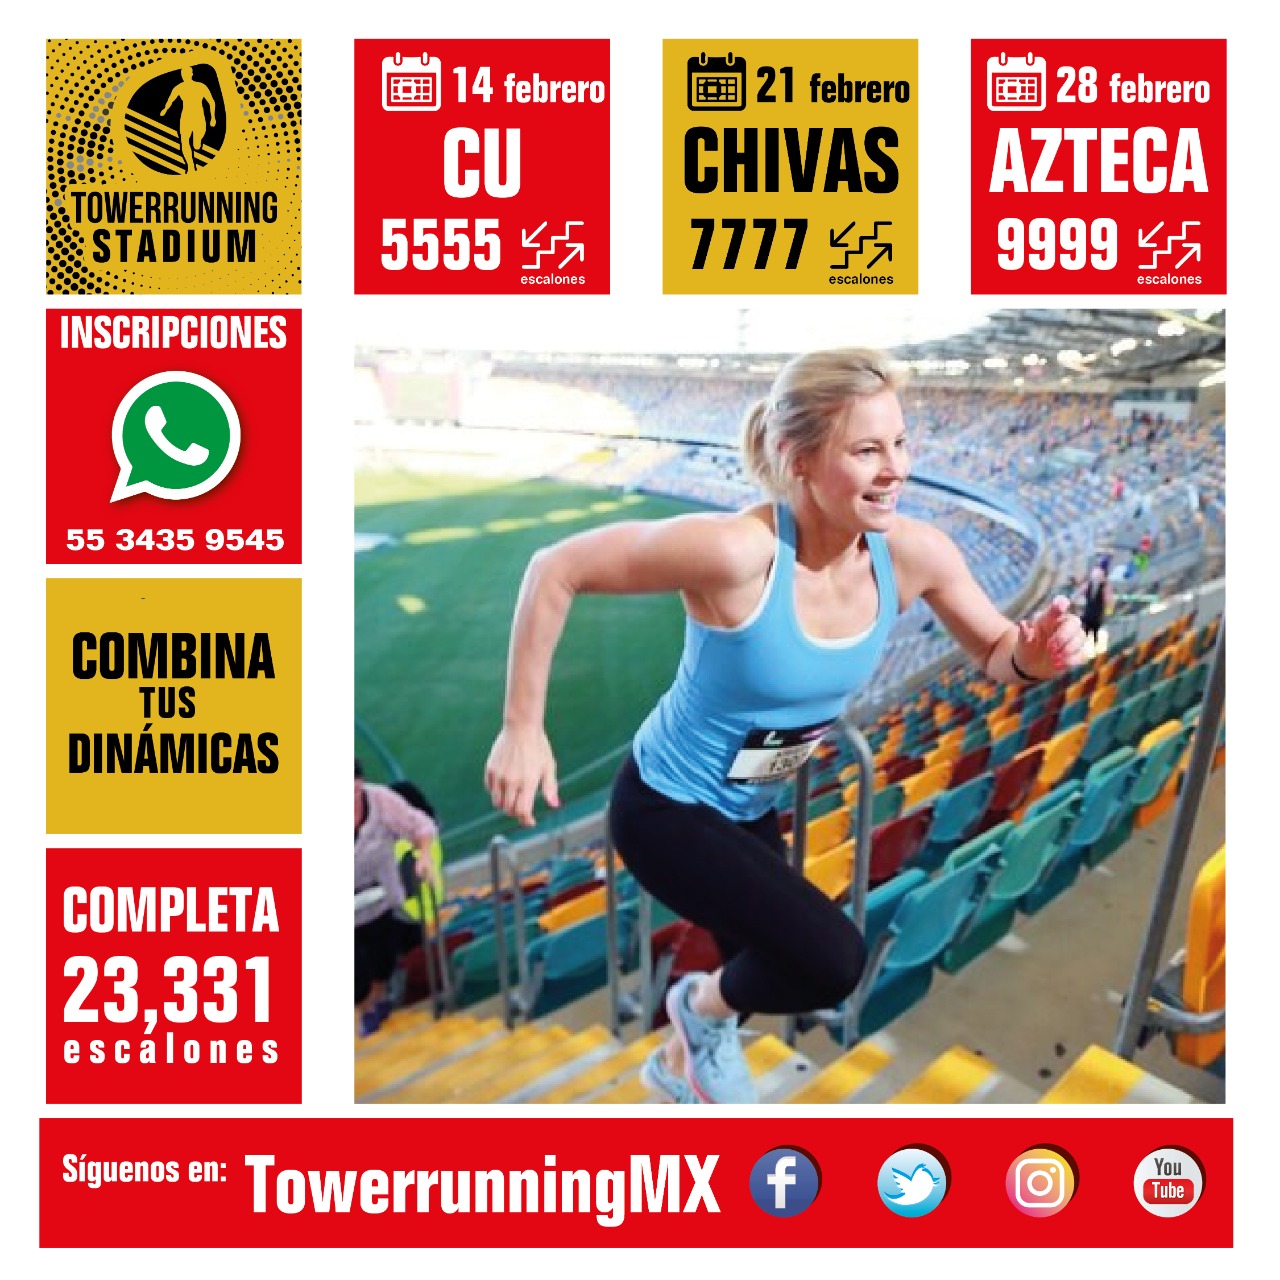 México, segundo lugar en towerrunning